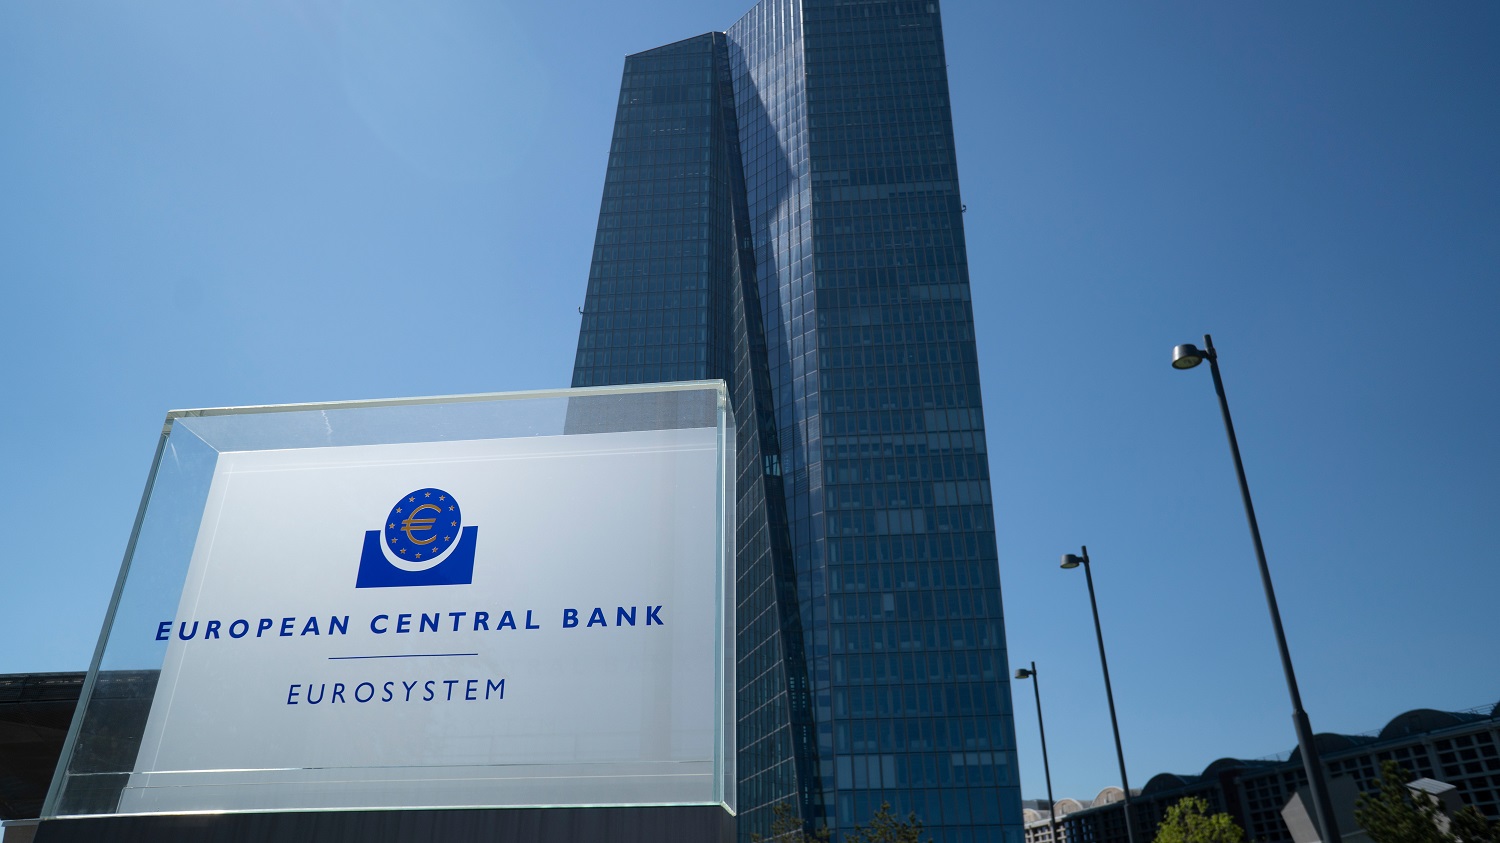 ΕΚΤ: Αντίθετη στην επιβολή έκτακτου φόρου στις ιταλικές τράπεζες